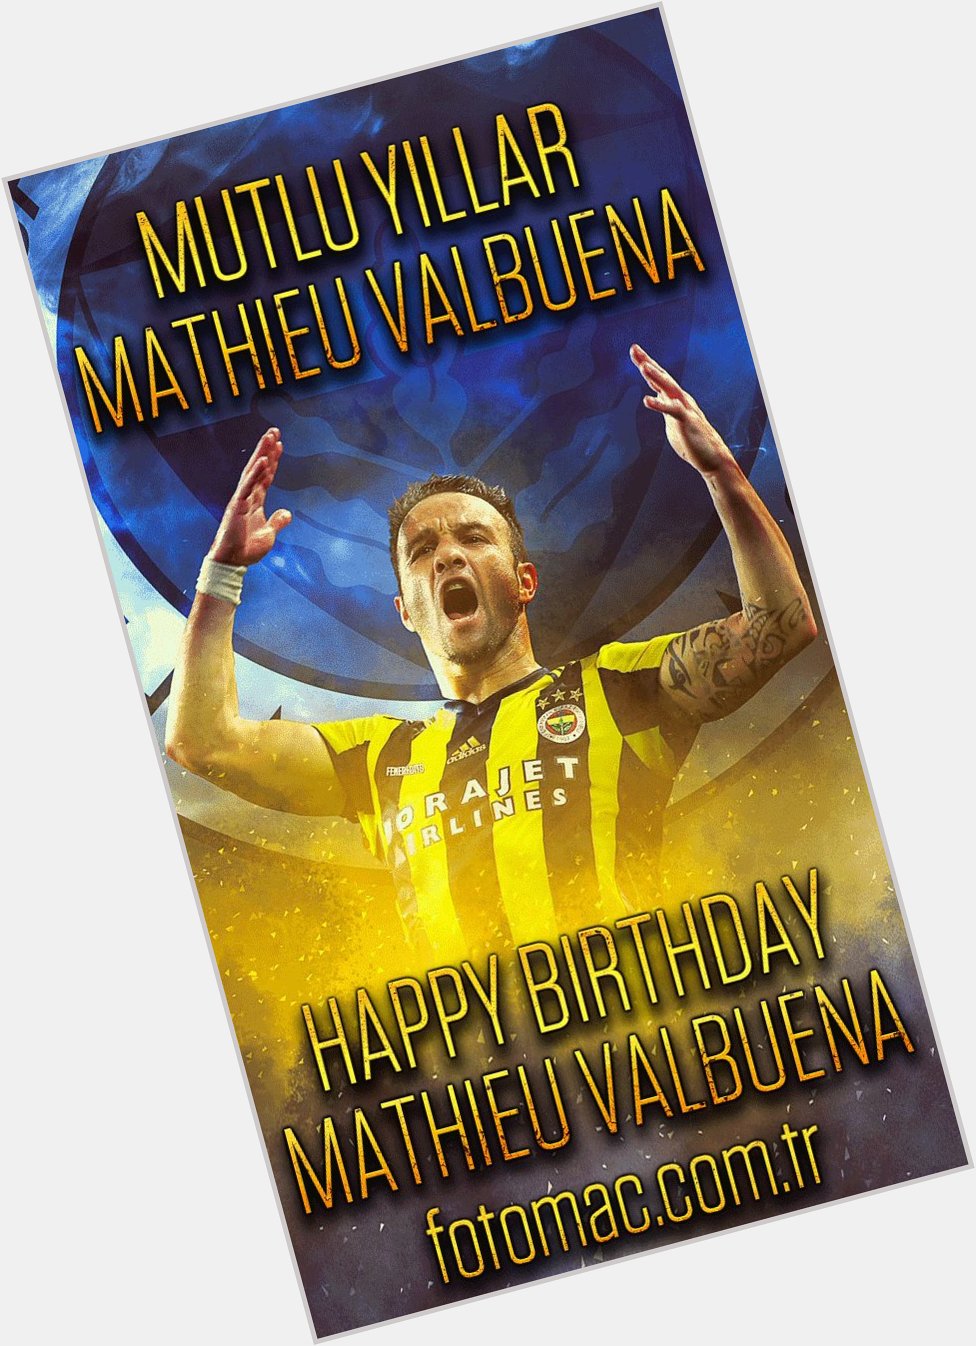 Mutlu y llar Mathieu Valbuena
Happy birthday 